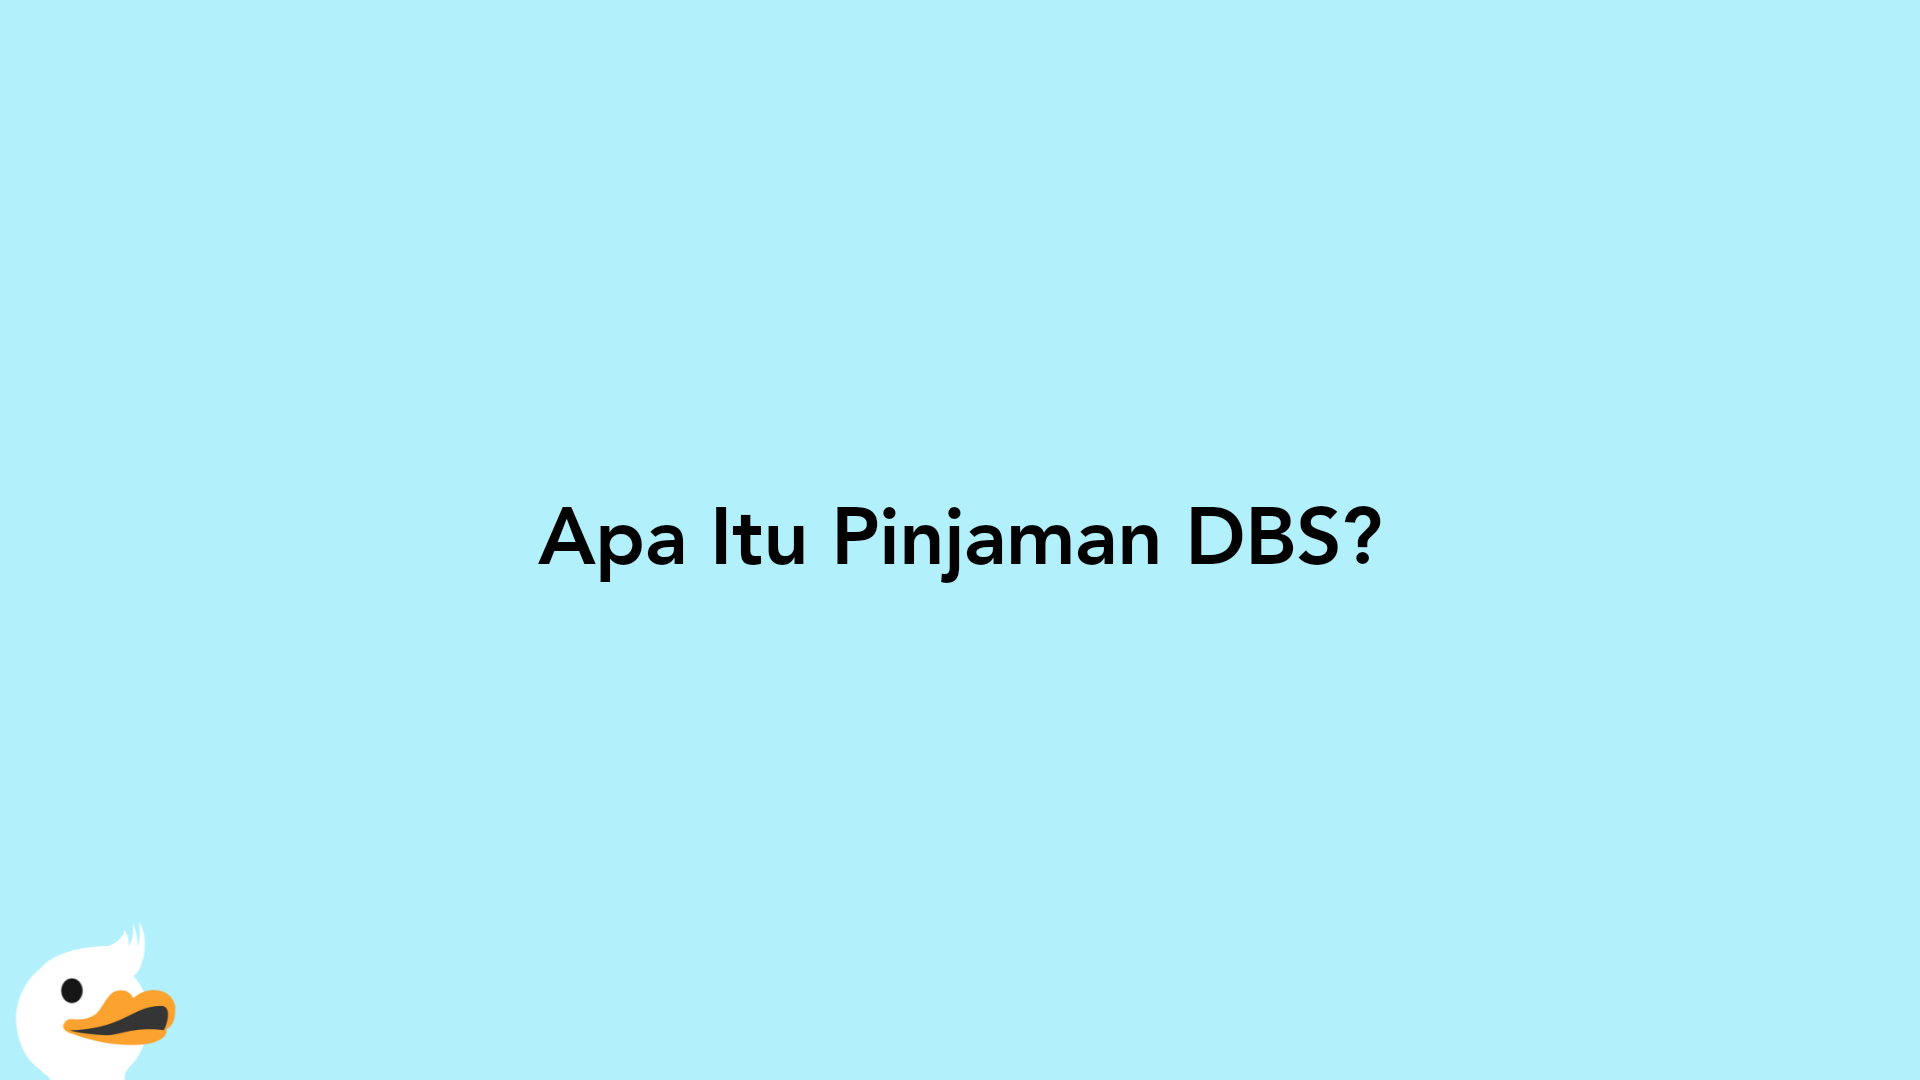 Apa Itu Pinjaman DBS?